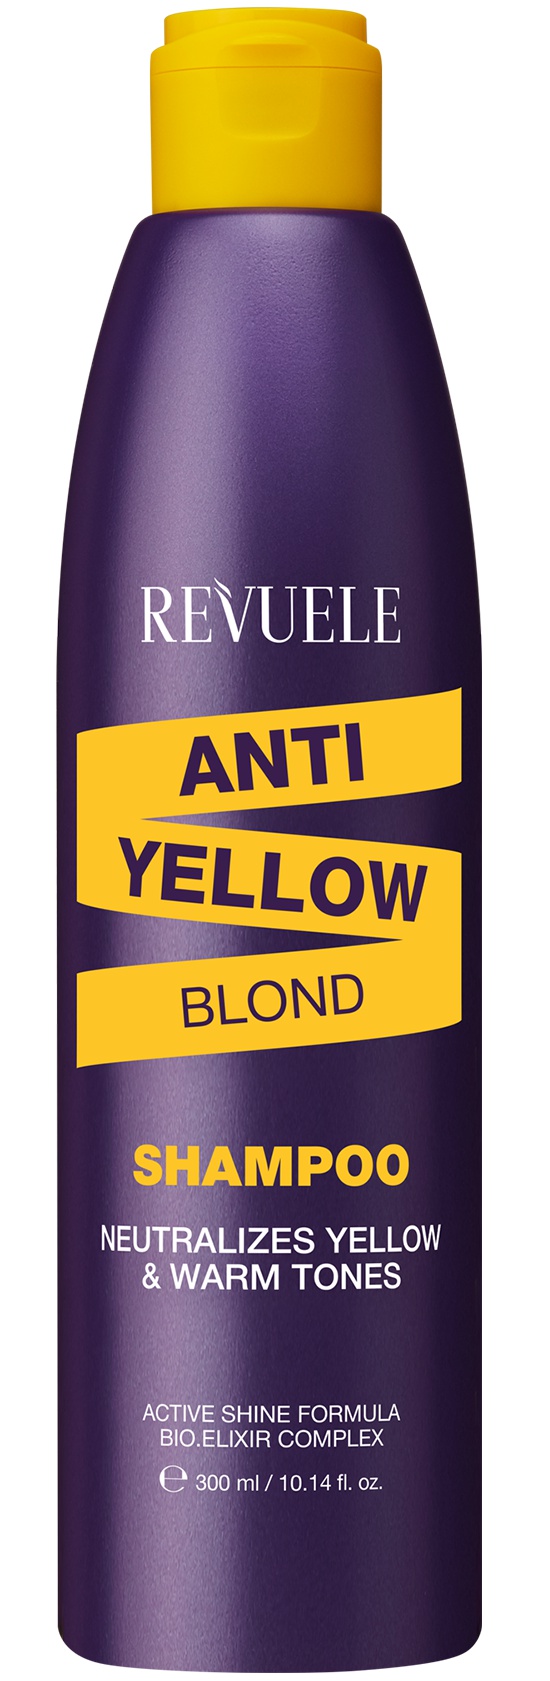 Revuele Anti Yellow Blond Shampoo